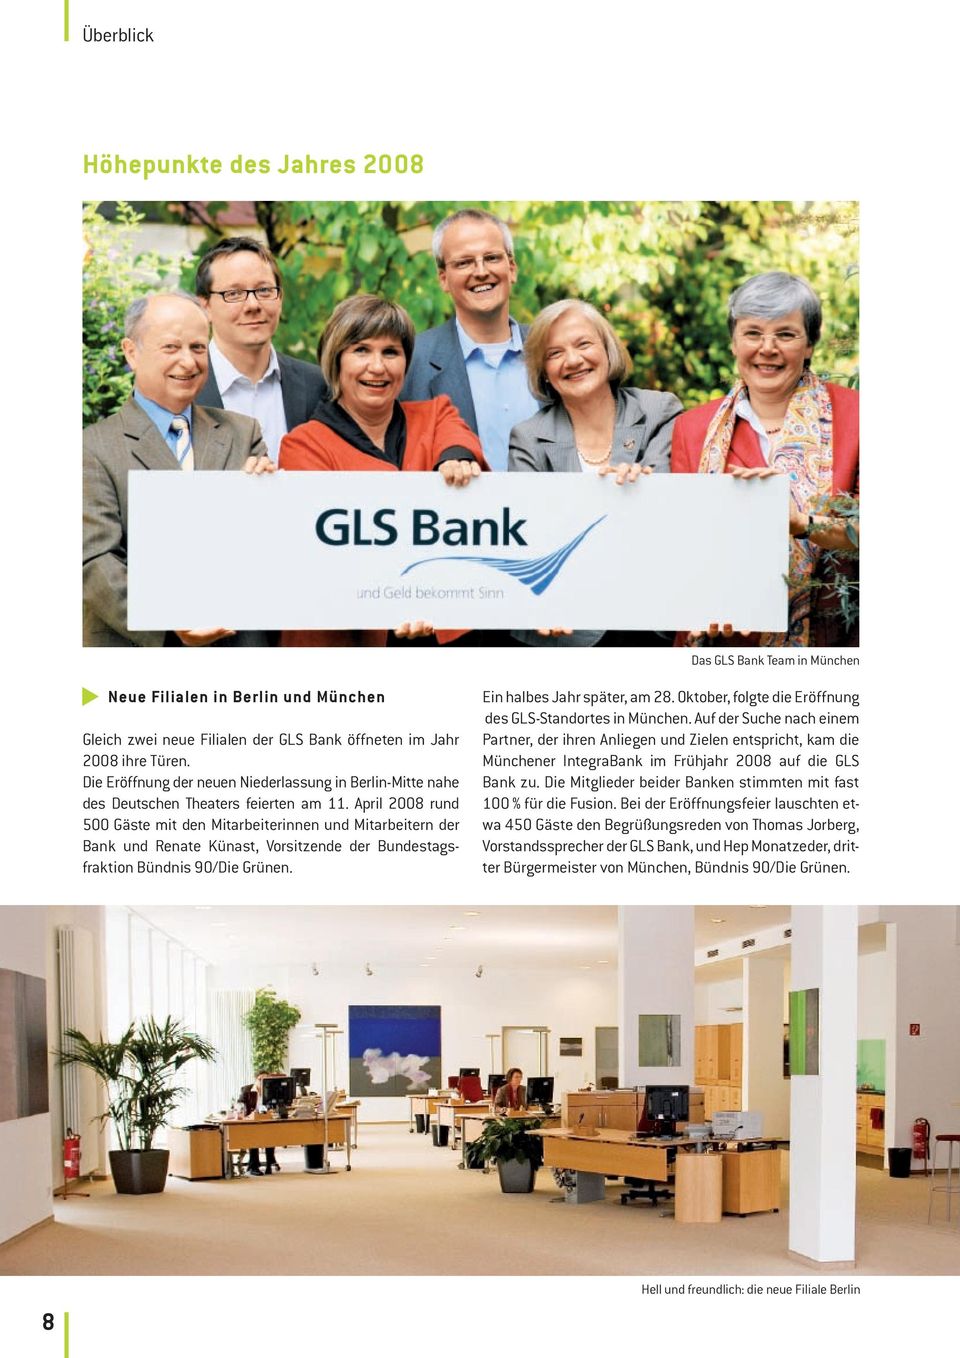 April 2008 rund 500 Gäste mit den Mitarbeiterinnen und Mitarbeitern der Bank und Renate Künast, Vorsitzende der Bundestagsfraktion Bündnis 90/Die Grünen. Ein halbes Jahr später, am 28.